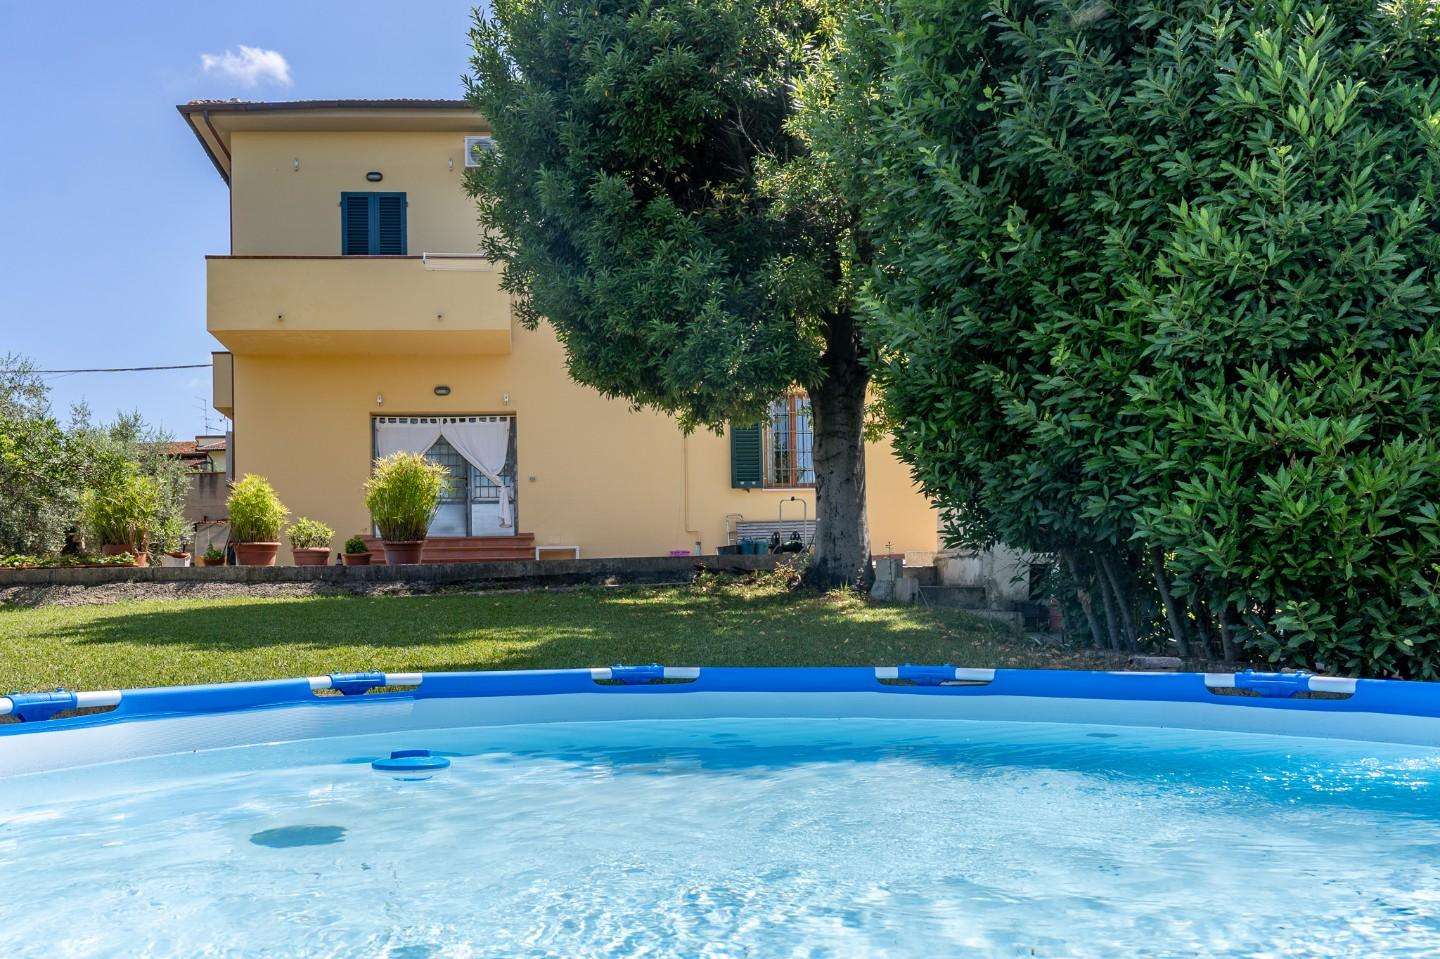 Casa Bi - Trifamiliare in Vendita a Cerreto Guidi Via Piave, 50050